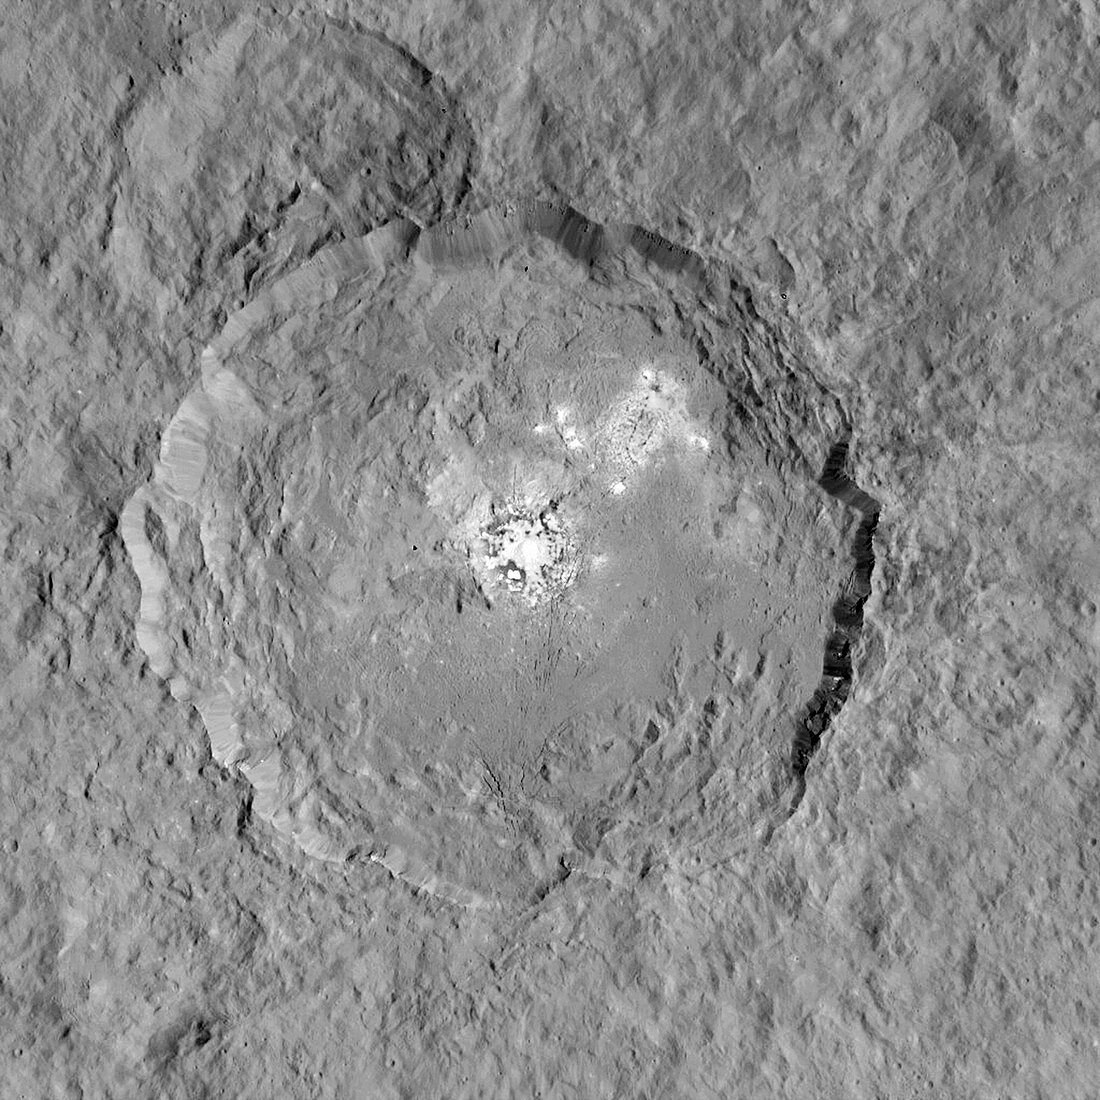 Occator crater,Ceres,satellite image